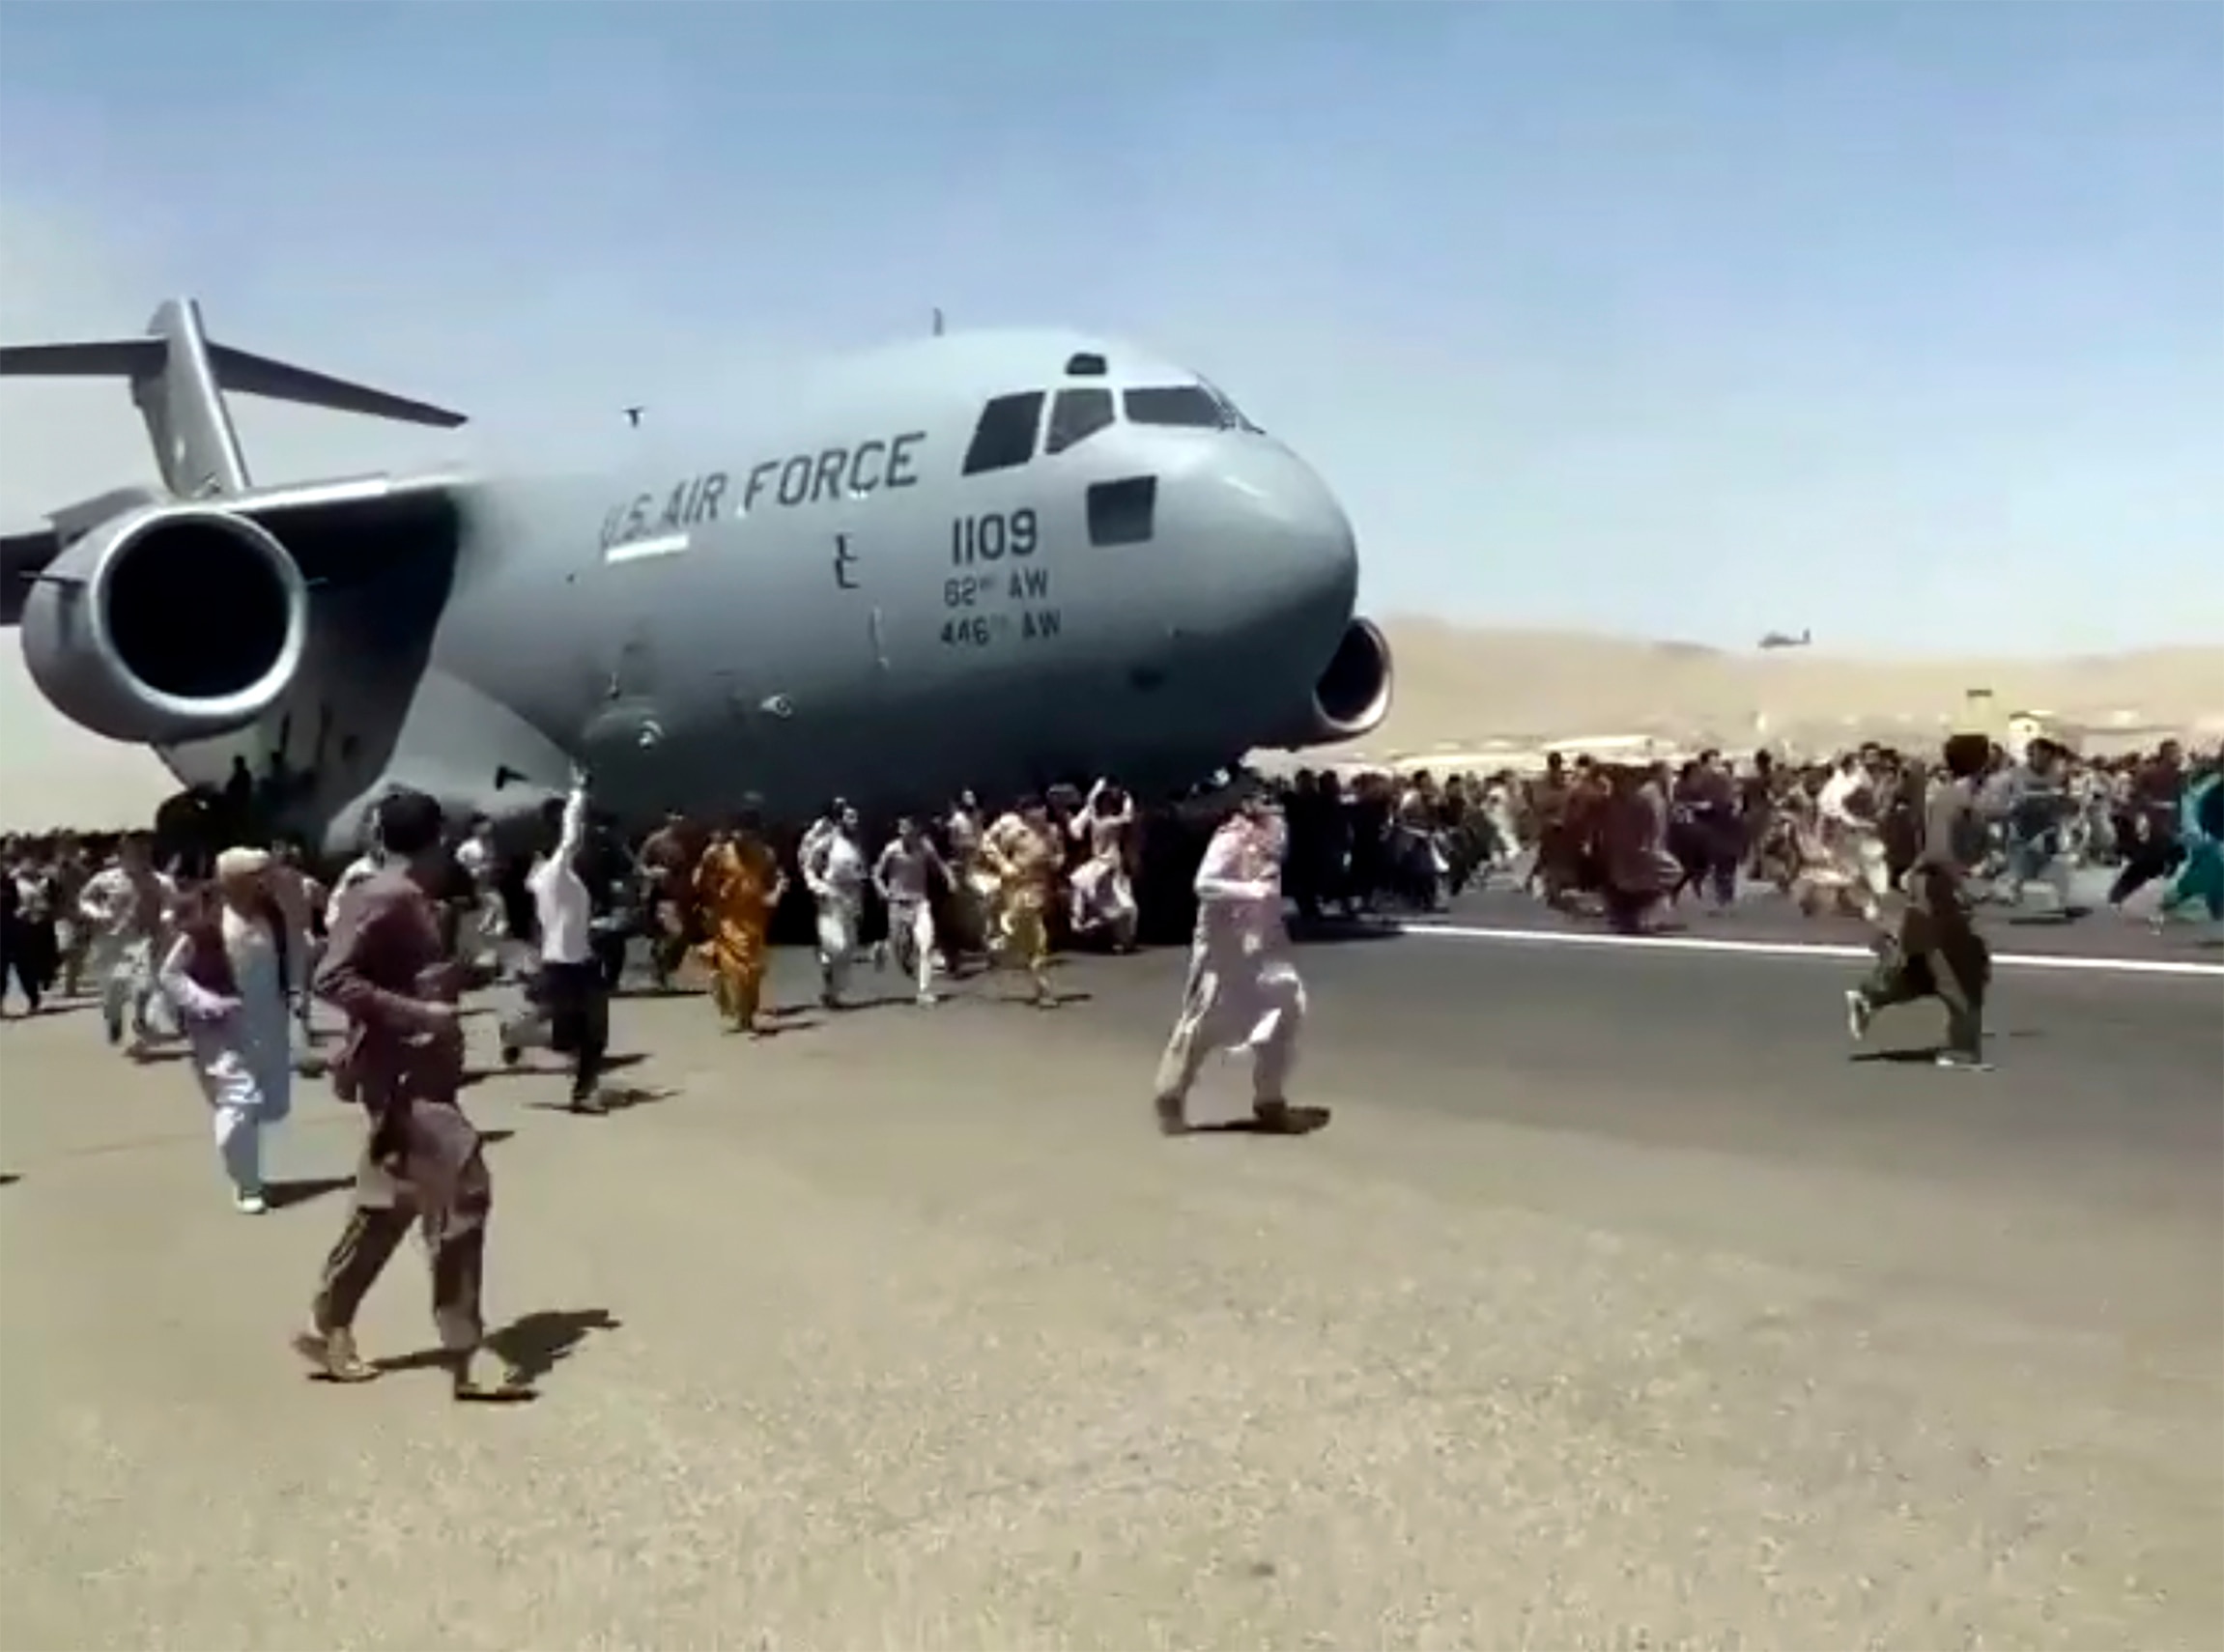 Sute de oameni aleargă alături de un avion de transport C-17 al Forțelor Aeriene ale SUA în timp ce acesta se deplasează de-a lungul asfaltului aeroportului internațional, din Kabul, Afganistan.